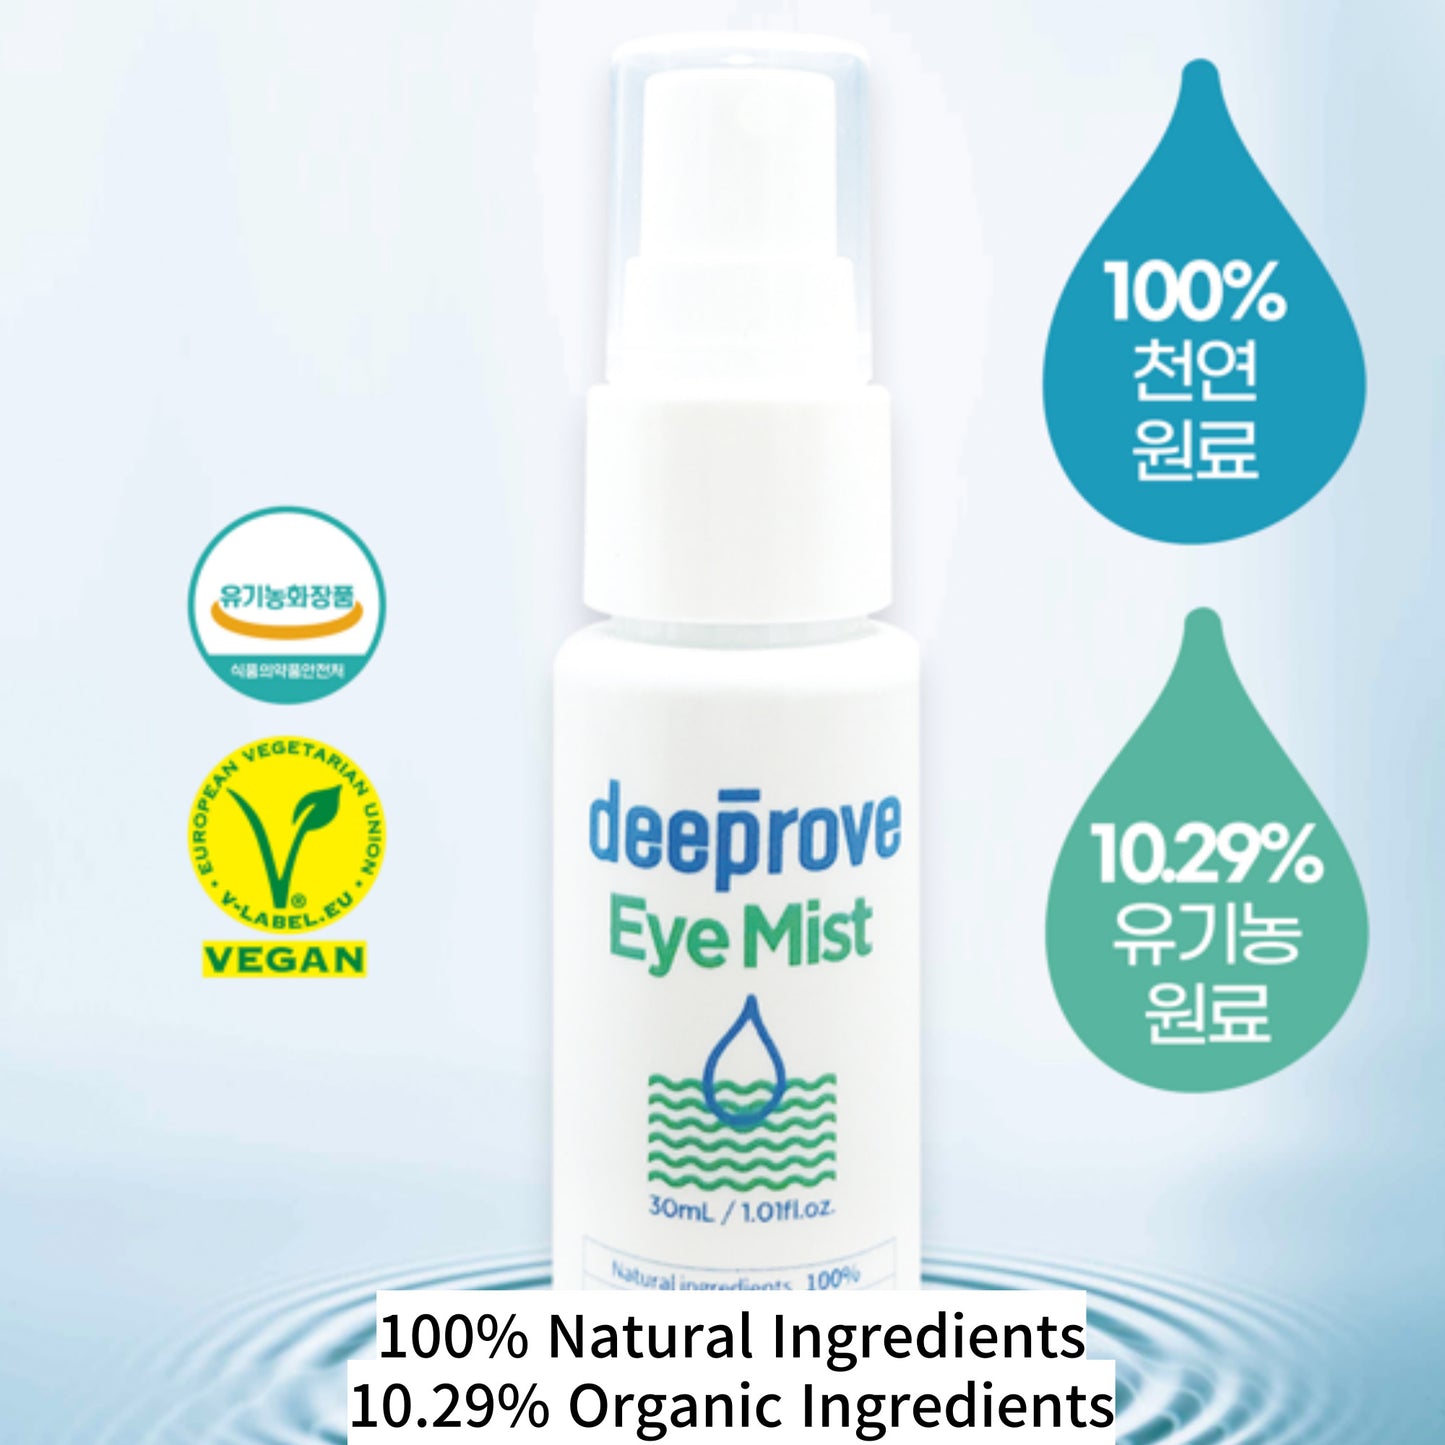 Deeprove Vegan Eye Mist 30ml